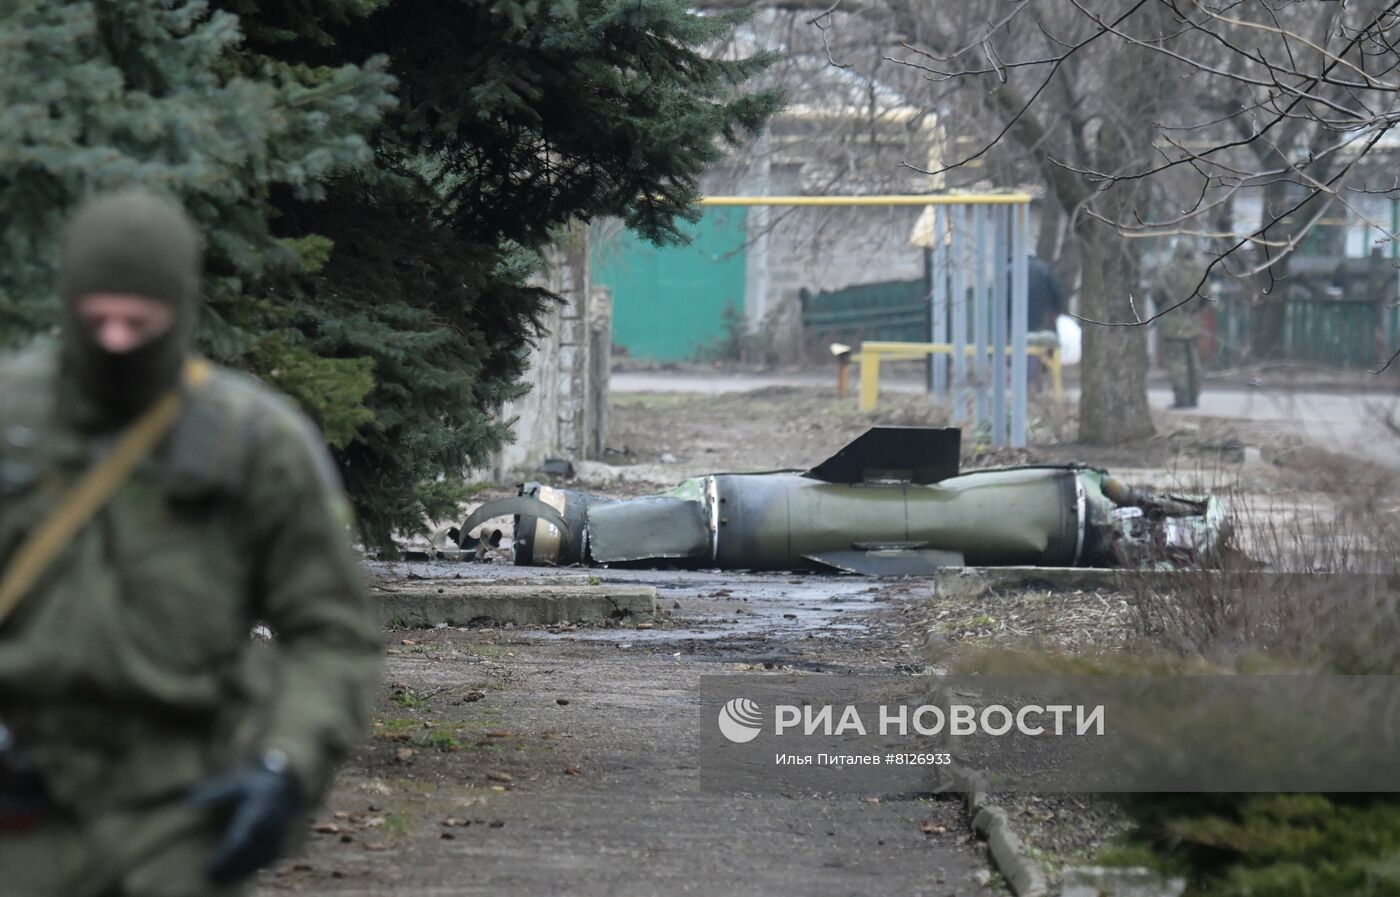 Остатки украинских ракет "Точка-У" на территории ДНР